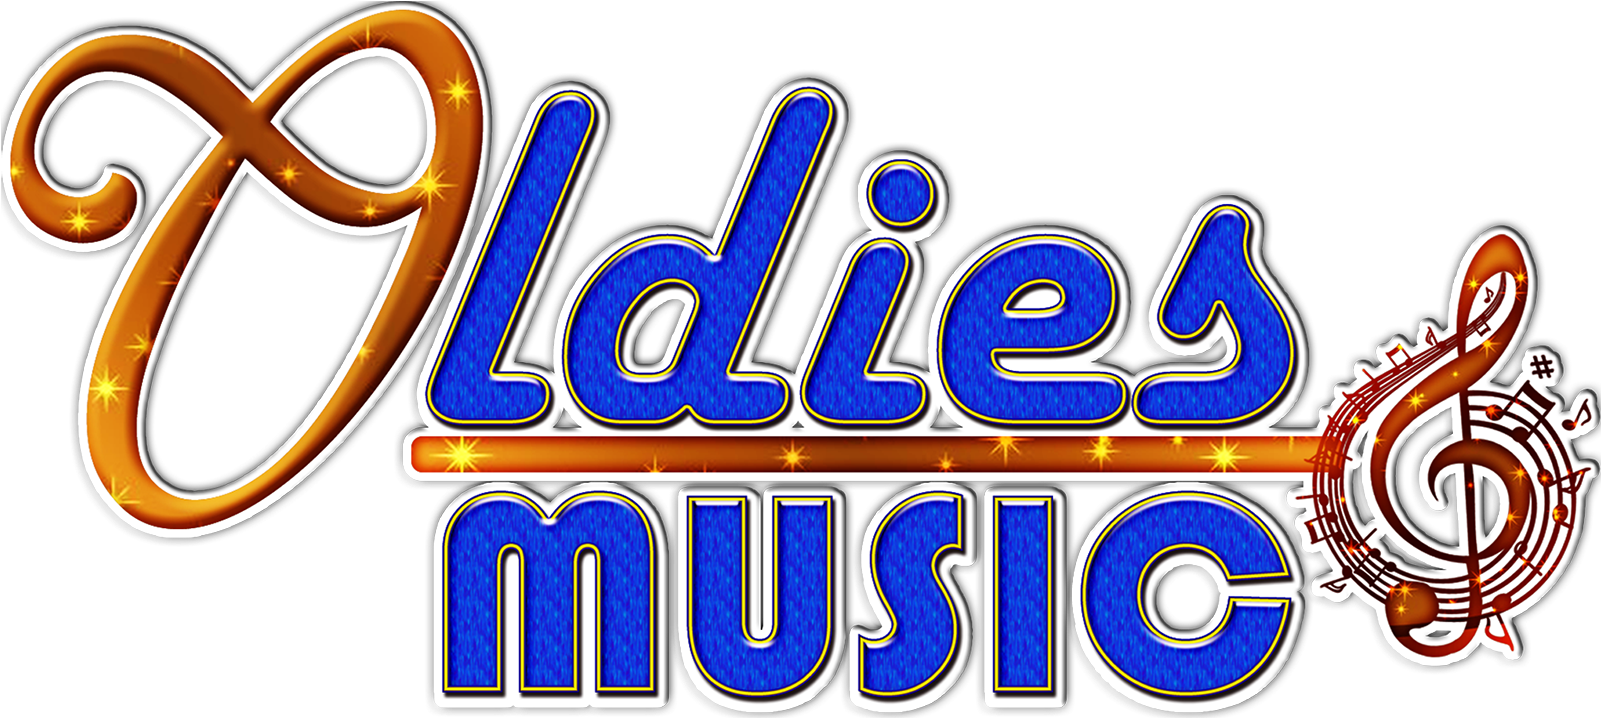 Oldies Music Logo PNG image